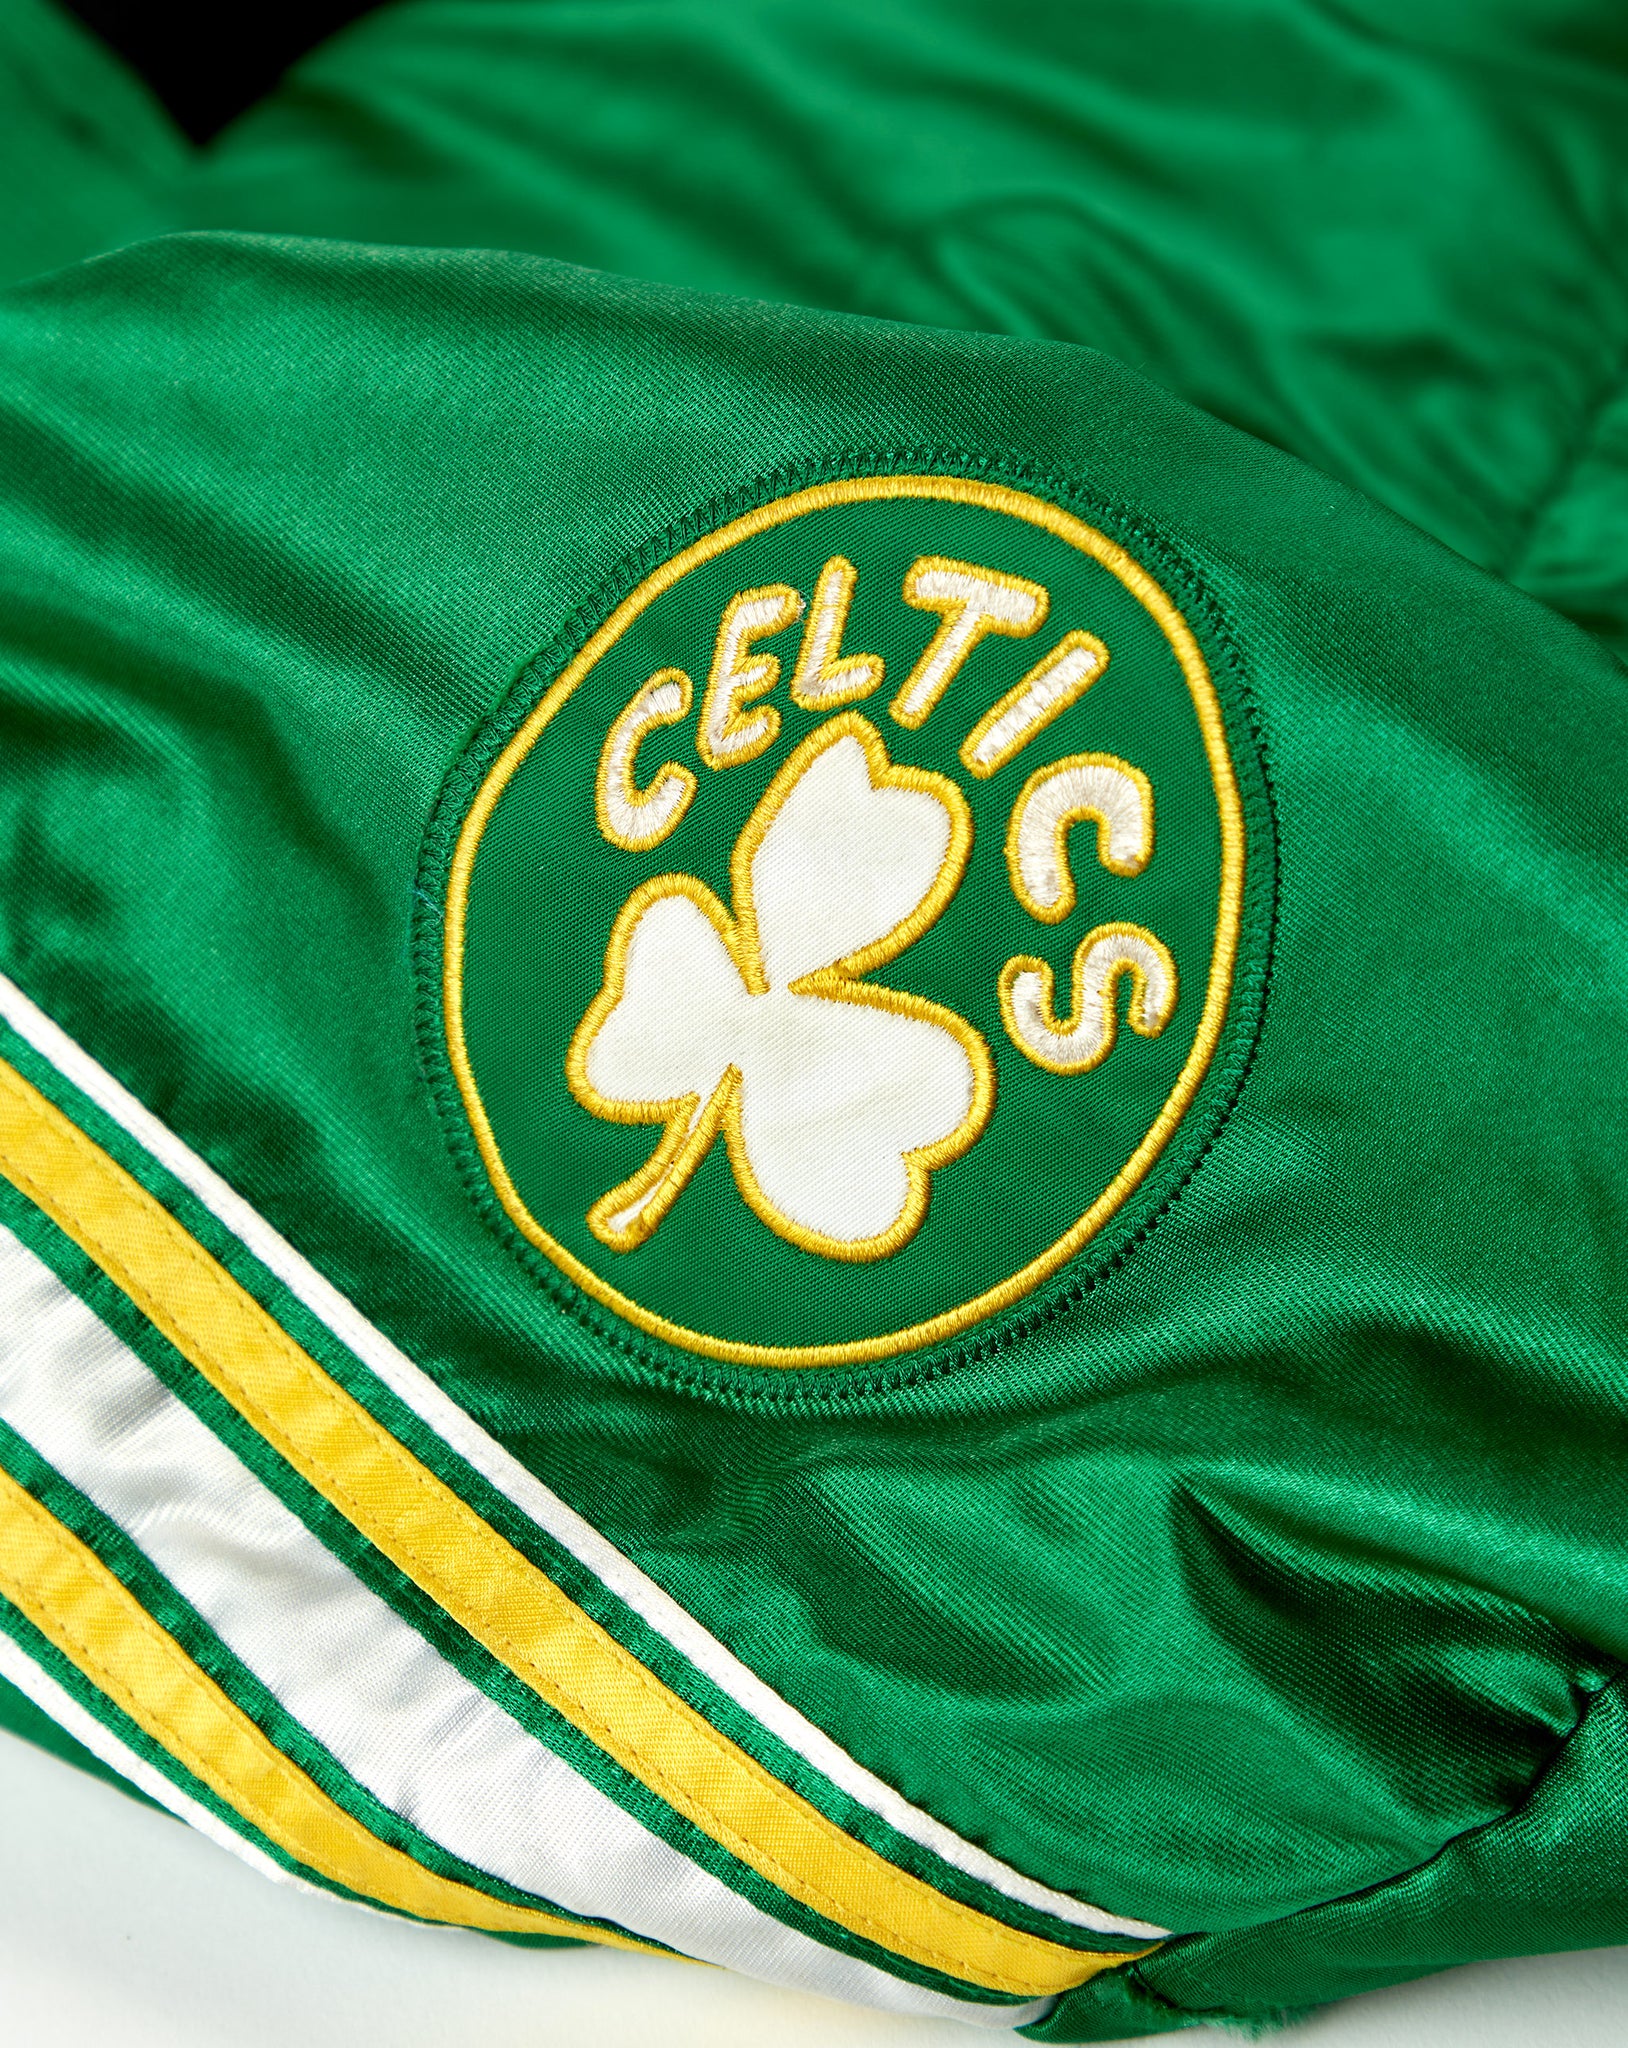 Celtics Duffle